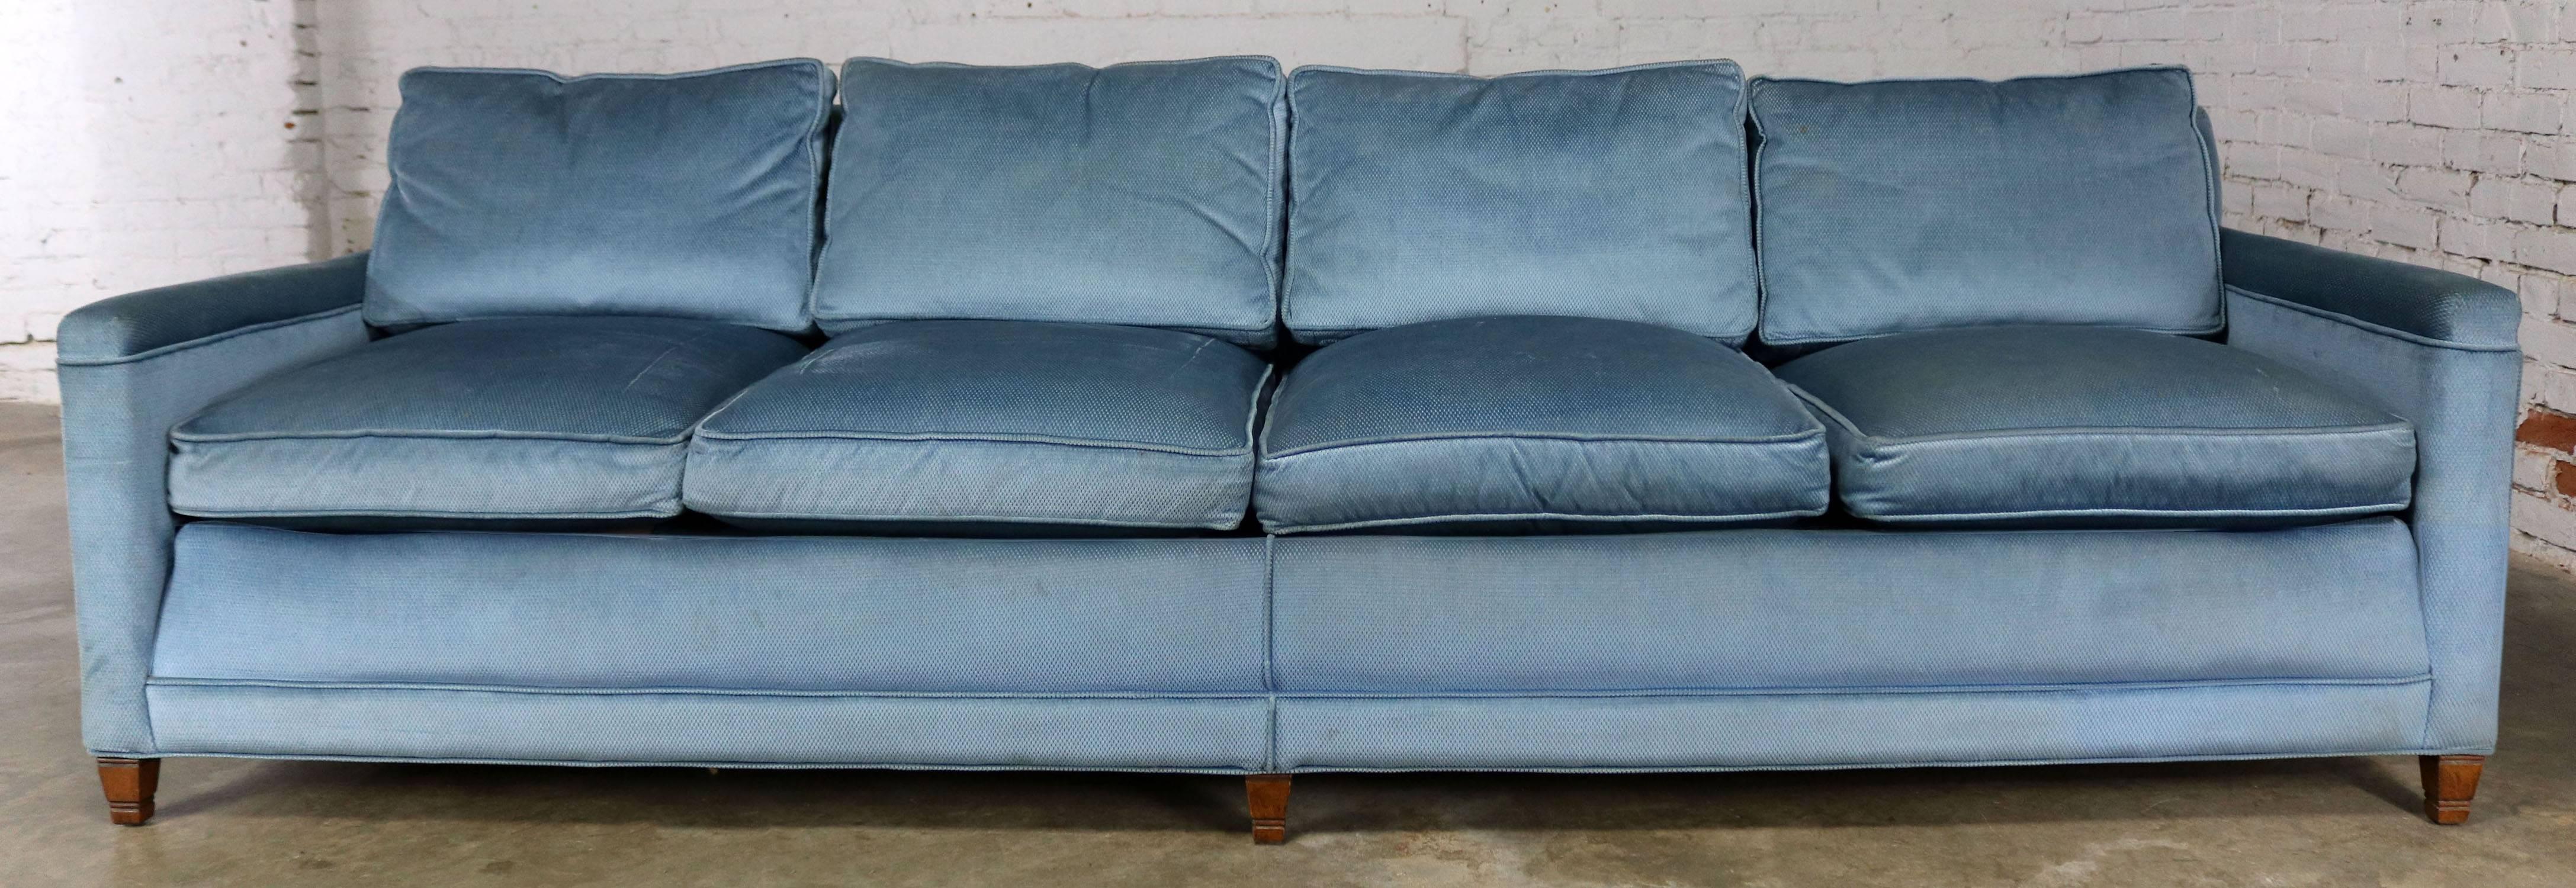 Powder Blue Lawson Style Four Cushion Sofa Vintage, Mid-Century Modern 1